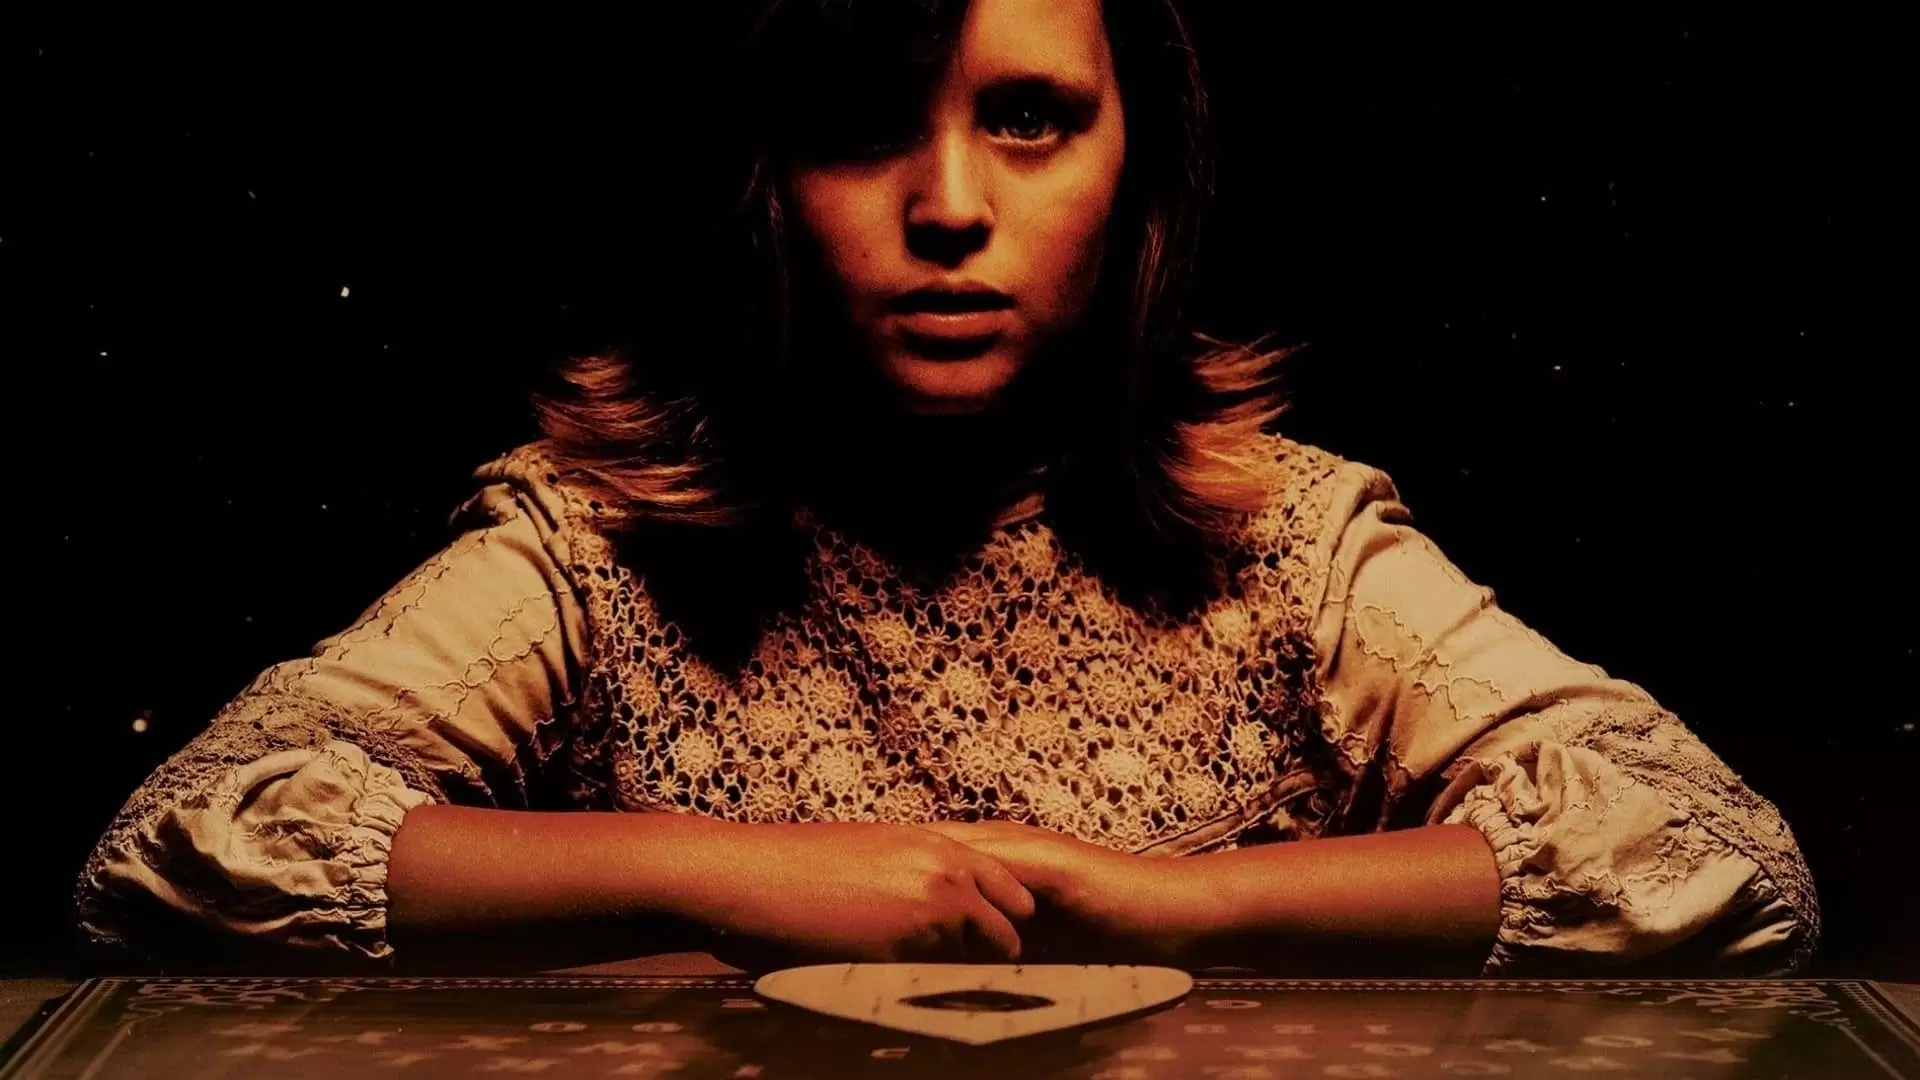 دانلود فیلم Ouija: Origin of Evil 2016 (ویجا: خاستگاه شیطان) با زیرنویس فارسی و تماشای آنلاین